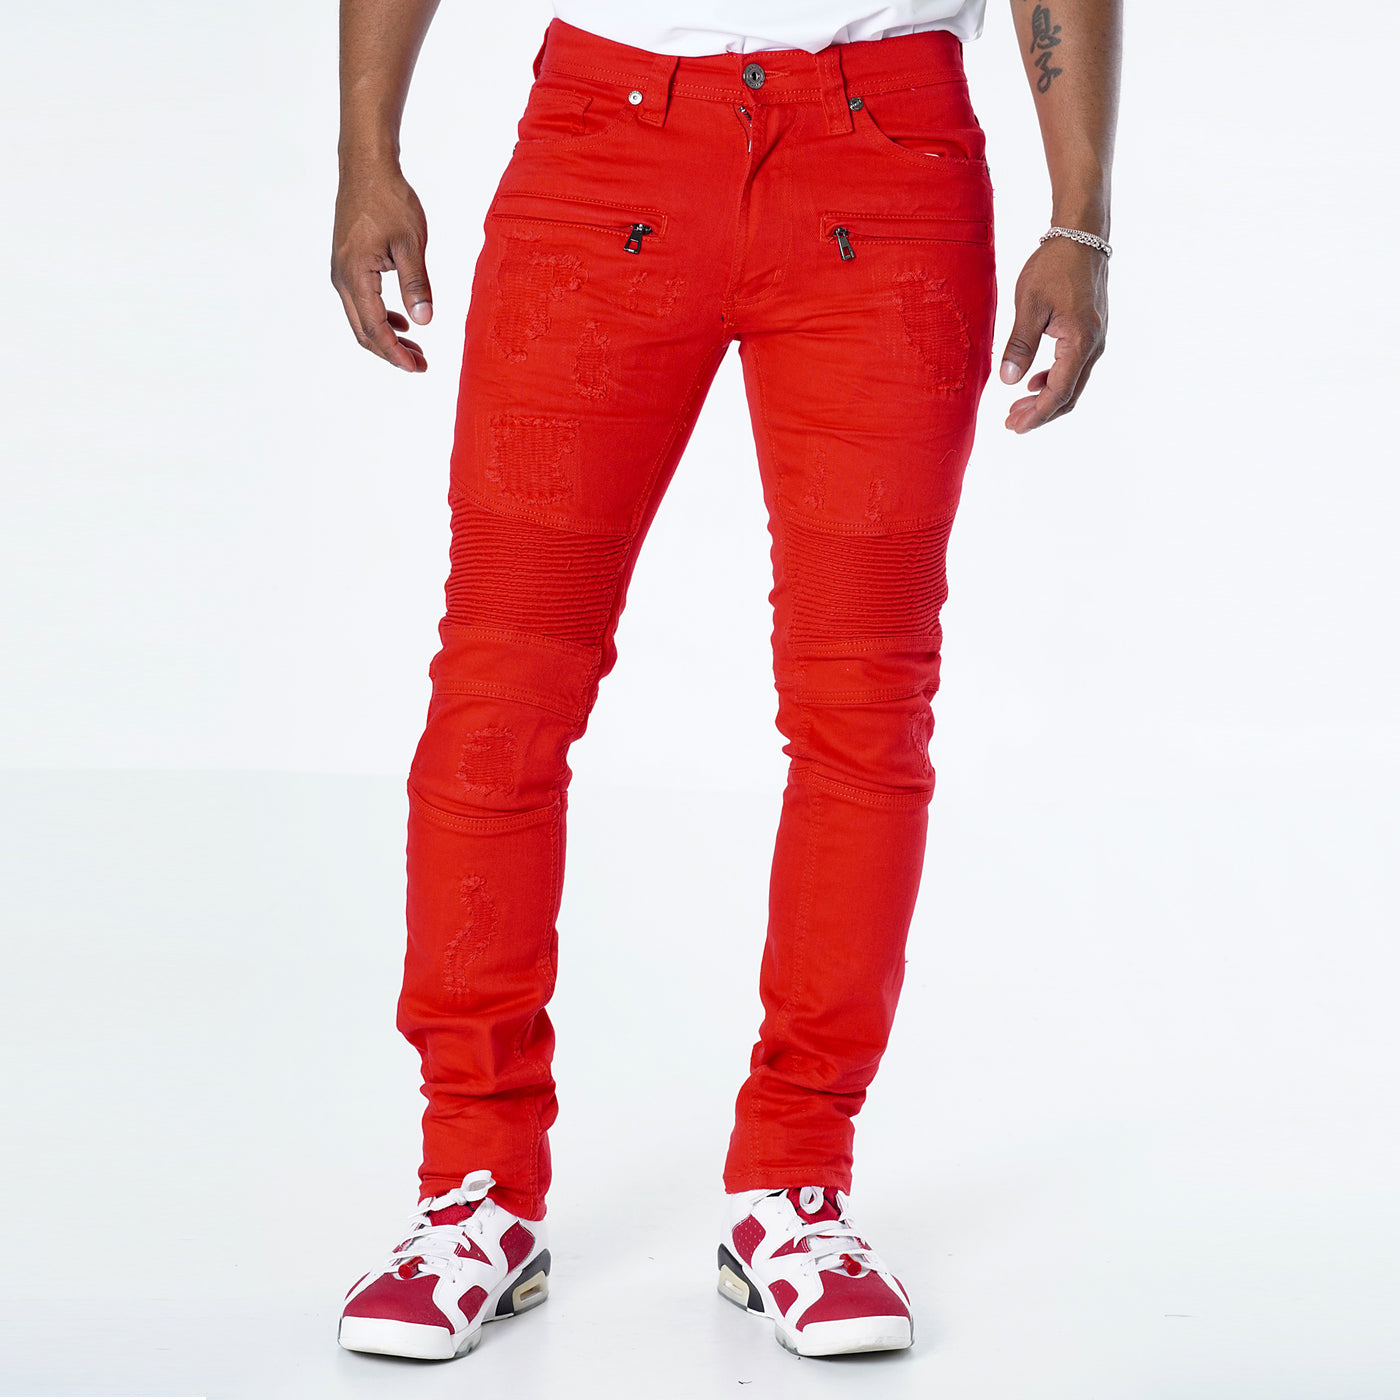 M1786 Makobi Prado Biker Jeans with Rip &amp; Repair - Red